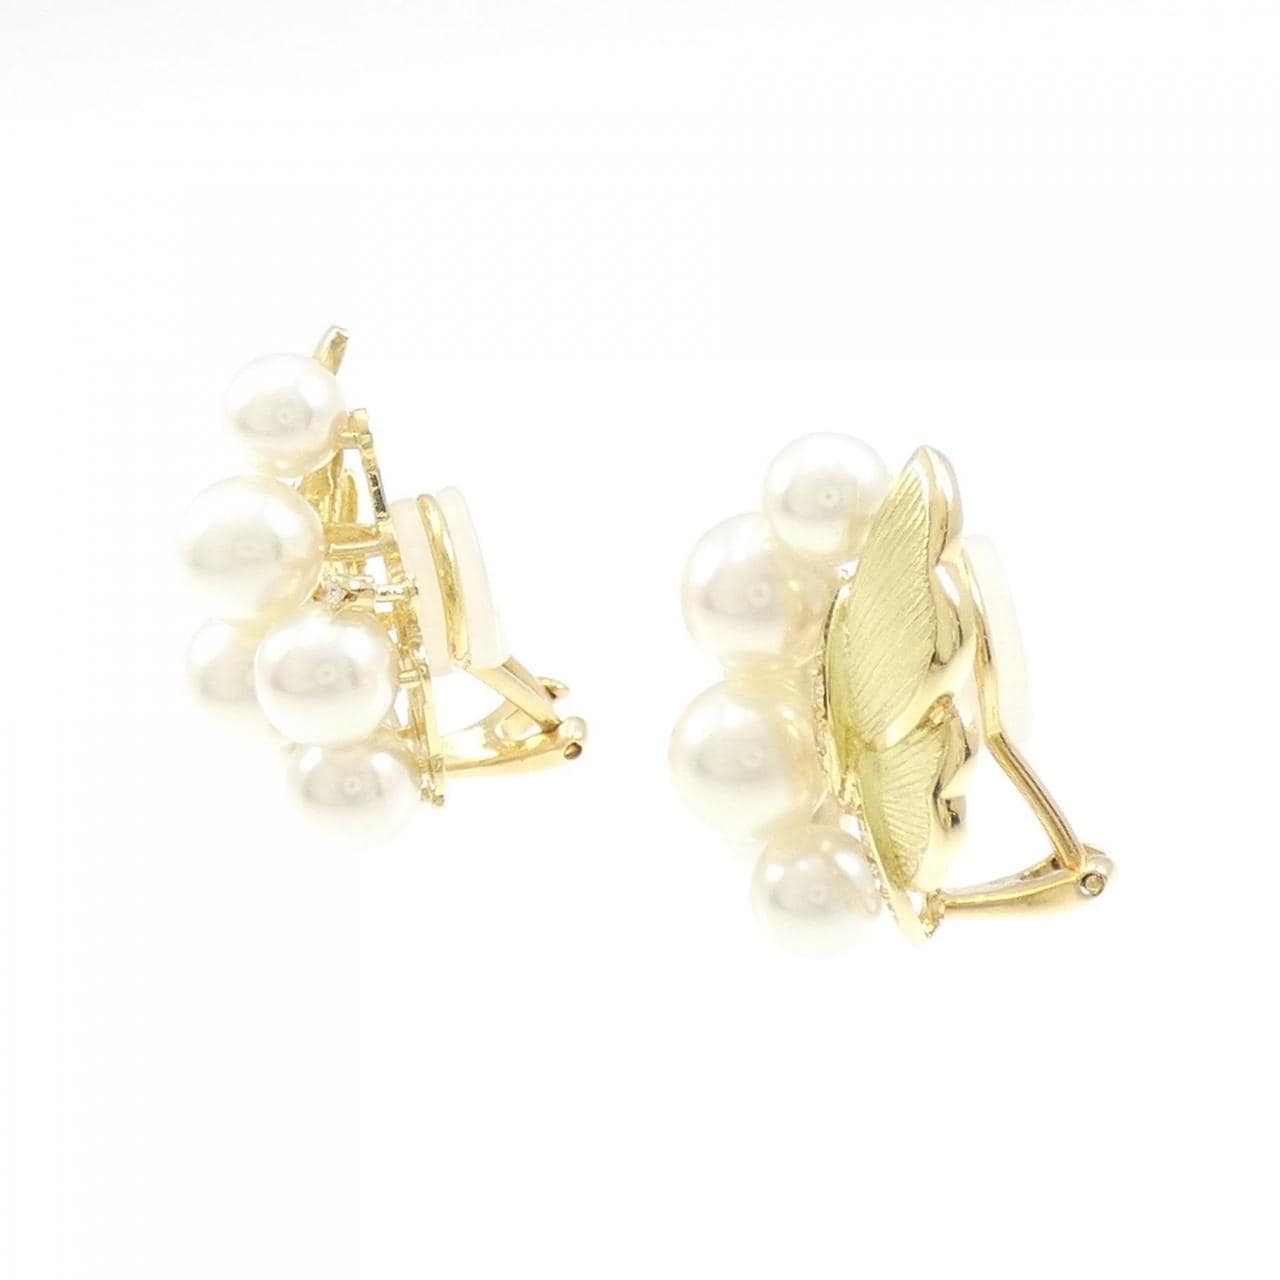 K18YG Akoya pearl earrings